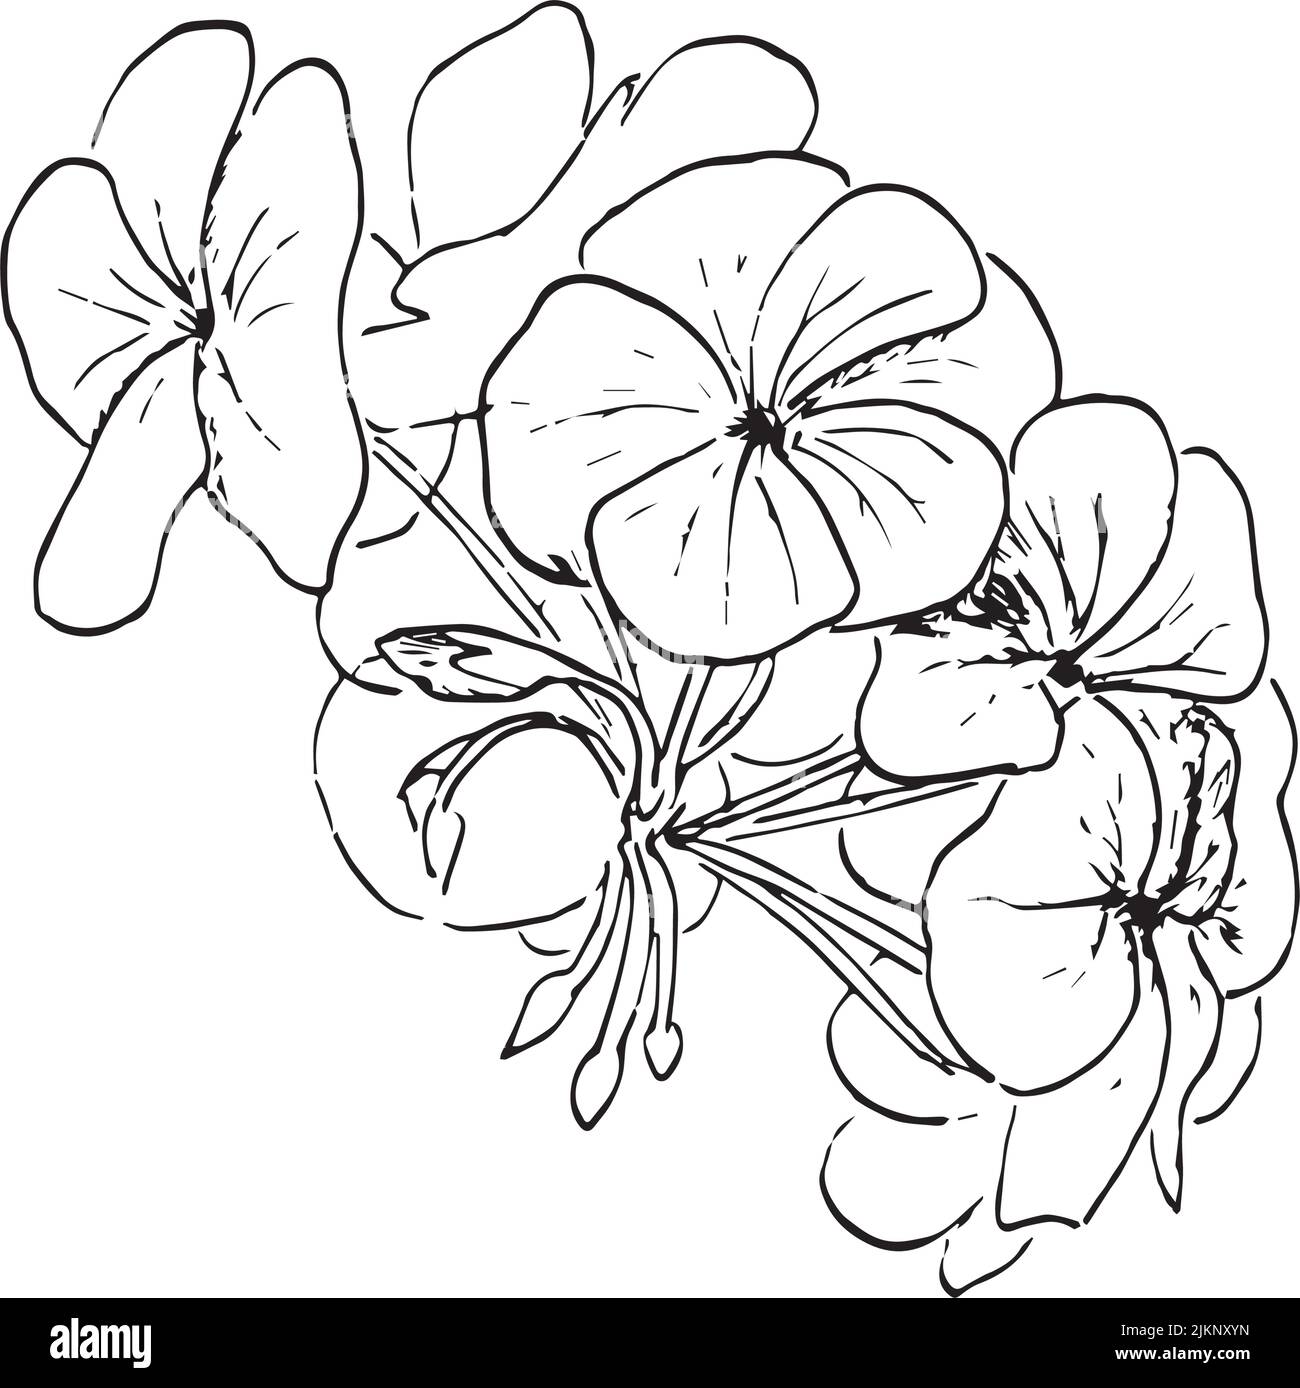 Dessin vectoriel Umckaloabo, Geranium sud-africain, Pelargonium sidoides, illustration de silhouette dessinée à la main, stylo à encre Illustration de Vecteur